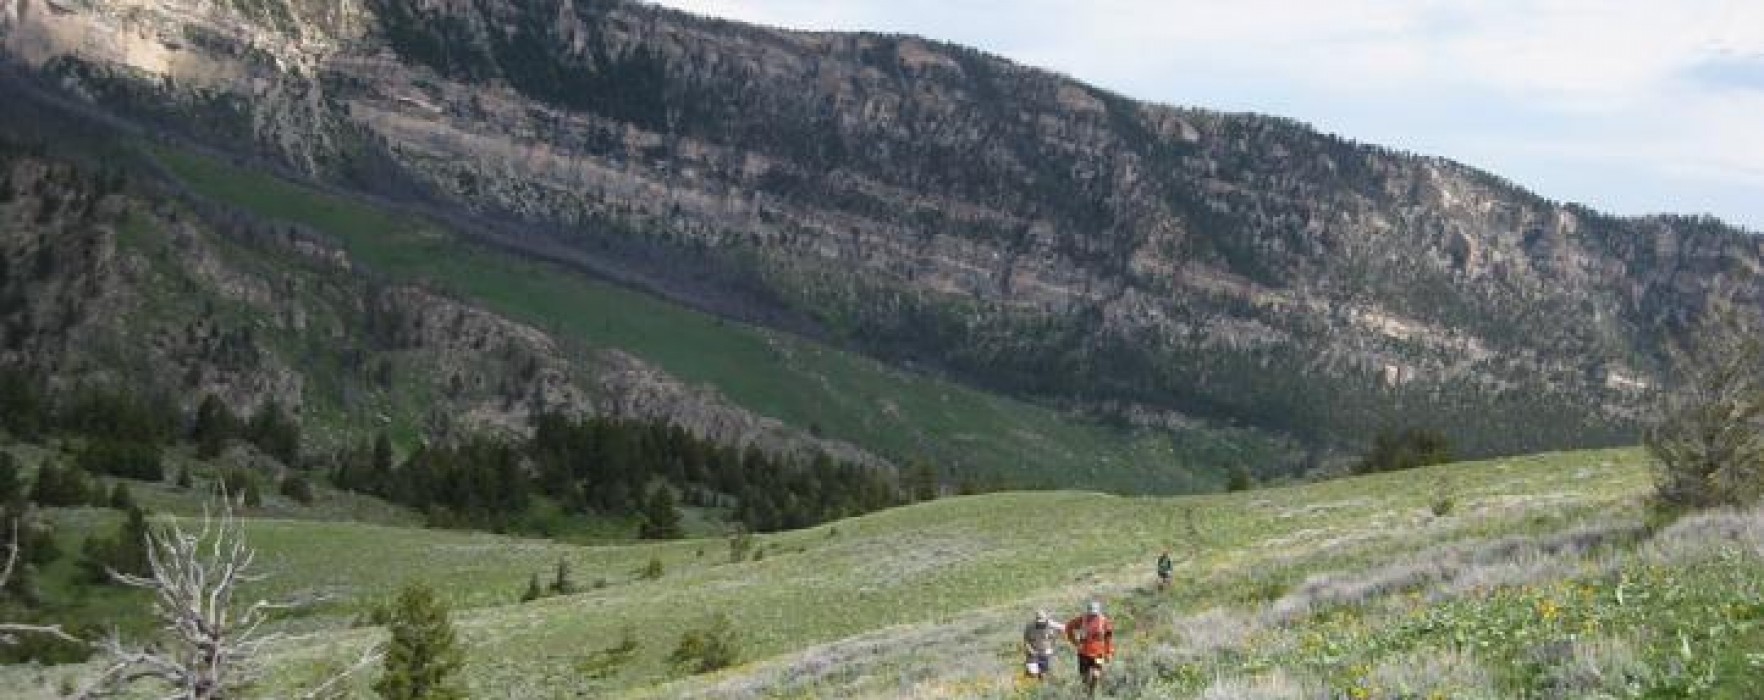 bighorn trail runs